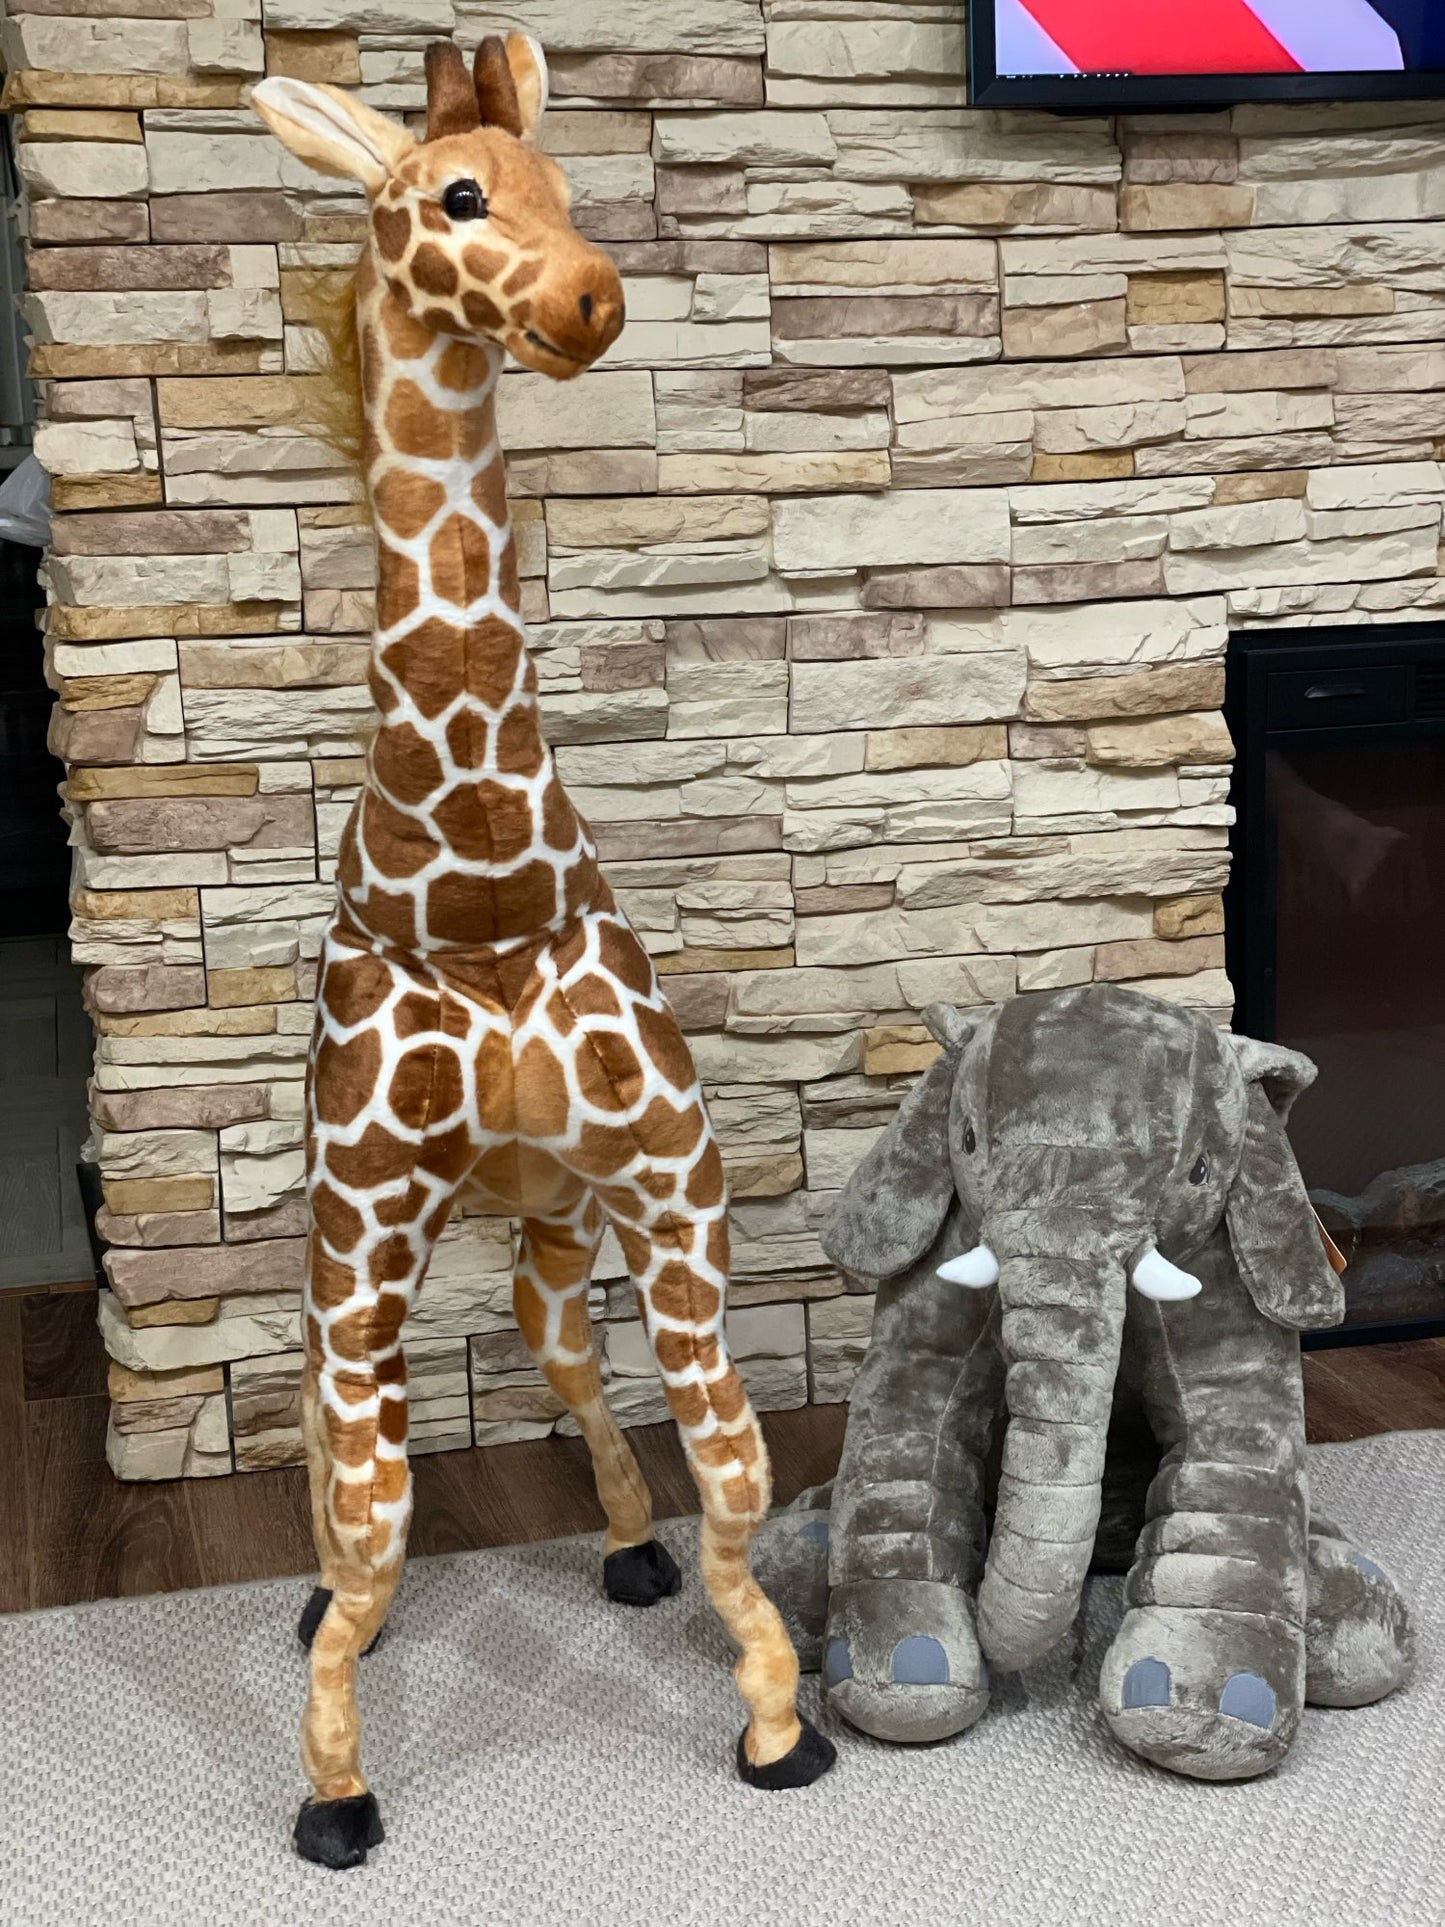 50-120cm Giant Soft Giraffe for Baby/Kids Room